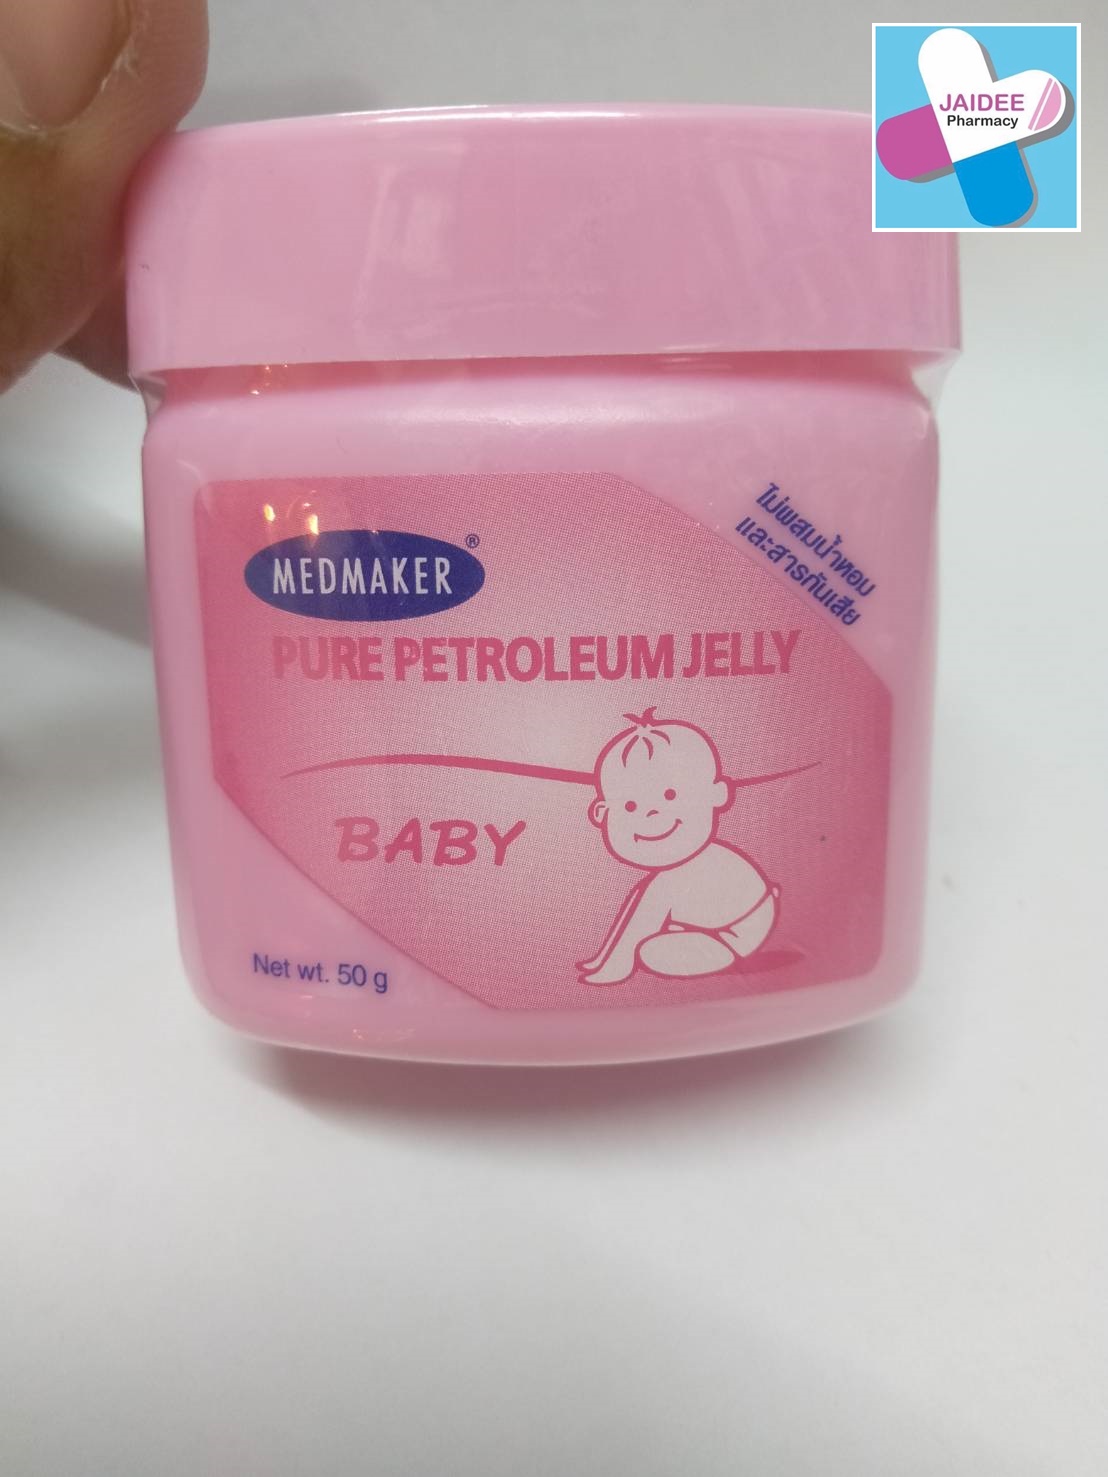 เมดเมเกอร์ Medmaker Pure petroleum jelly ปิโตรเลียมเจลลี่ เบบี้ ผลิตภัณฑ์บำรุงผิวกาย เด็กทารก 50 กรัม (สีชมพู)